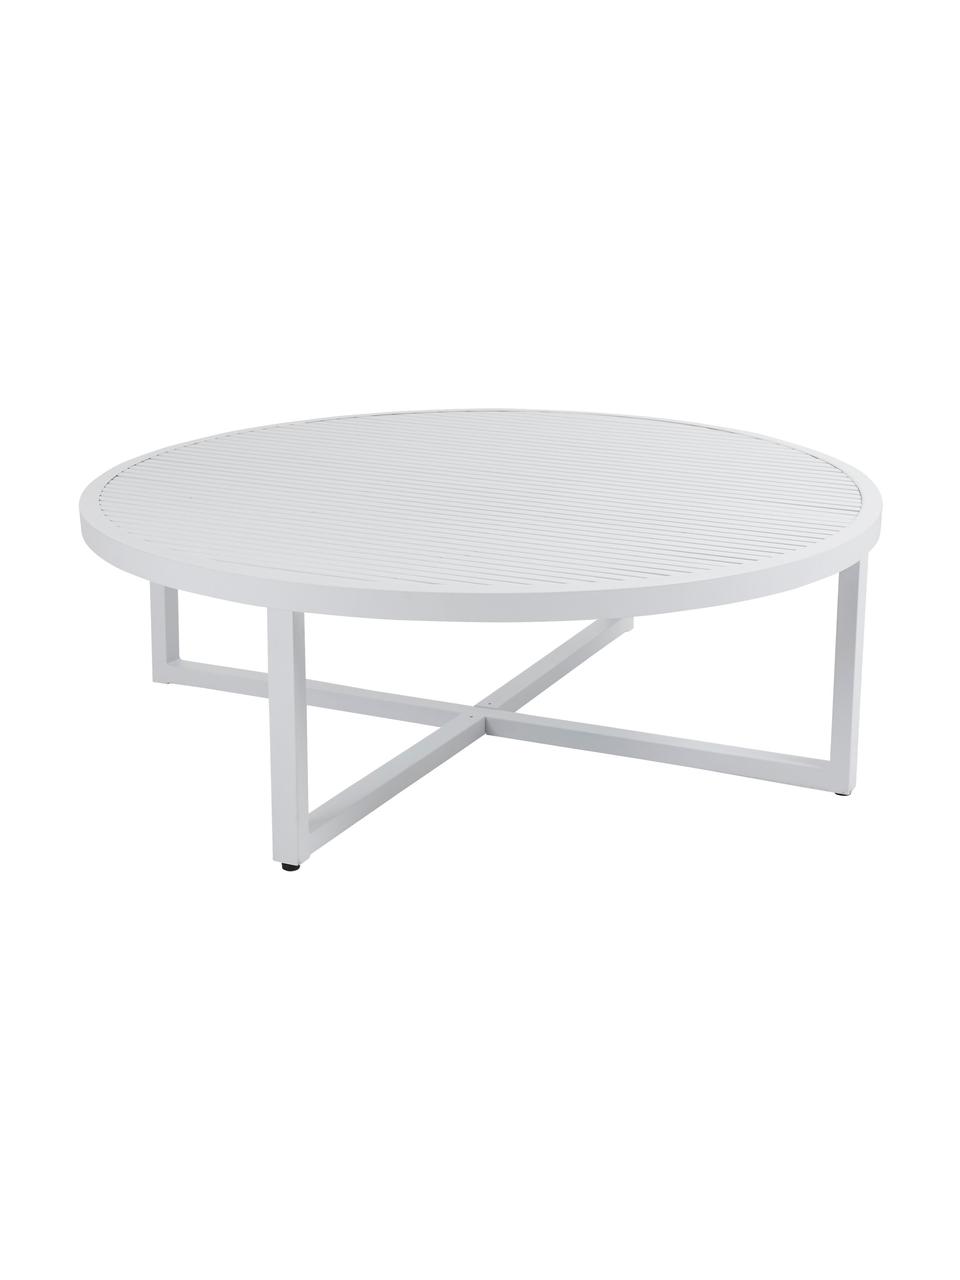 Tavolino da giardino in alluminio bianco Vevi, Alluminio verniciato a polvere, Bianco, Ø 100 x Alt. 40 cm